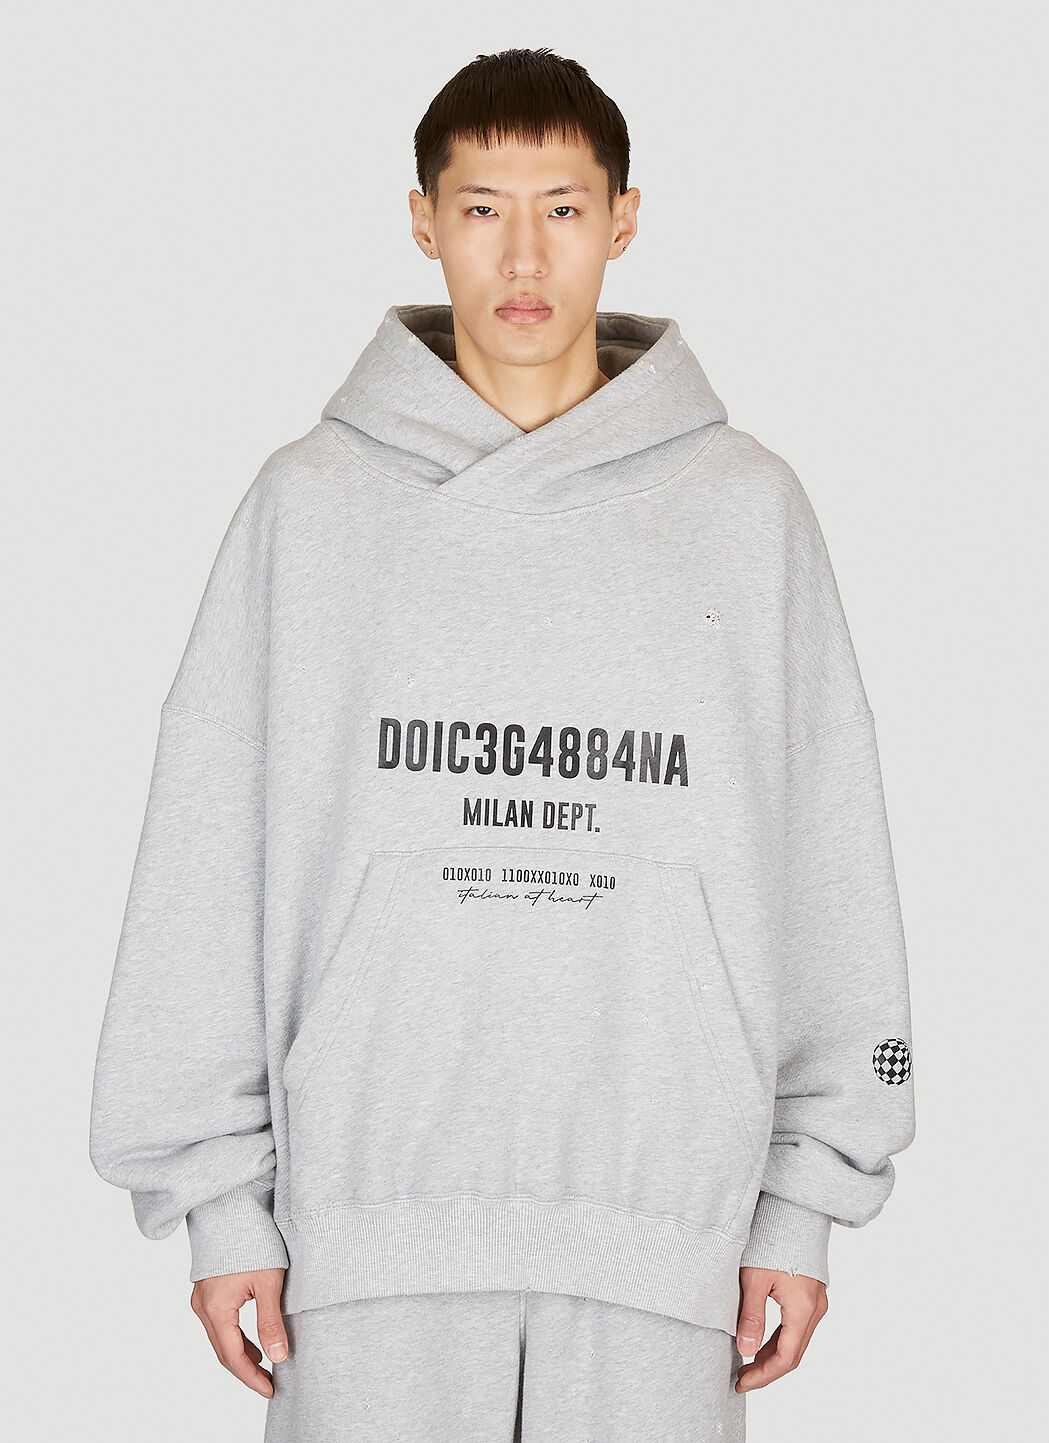 Dolce & Gabbana 徽标印花连帽运动衫 灰色 dol0154003